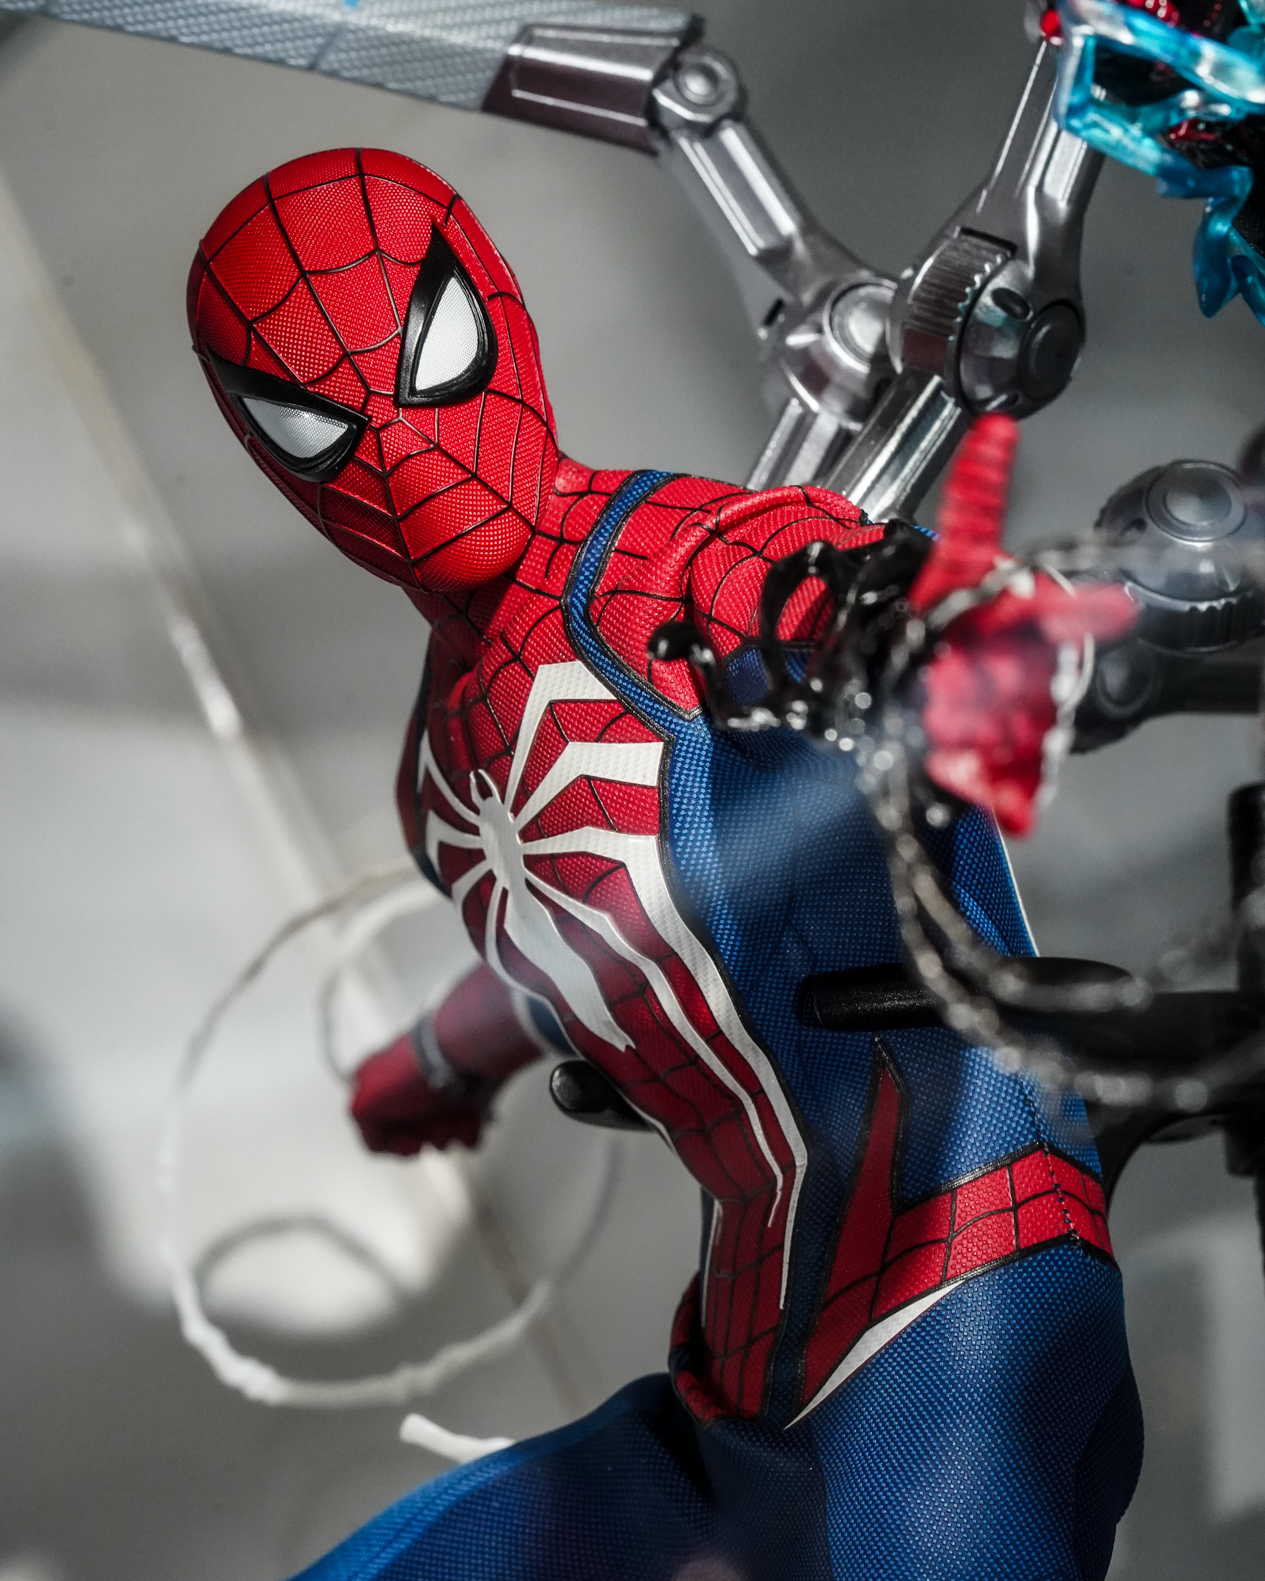 Figure Spider-Man Ps4 - Marvel Shop